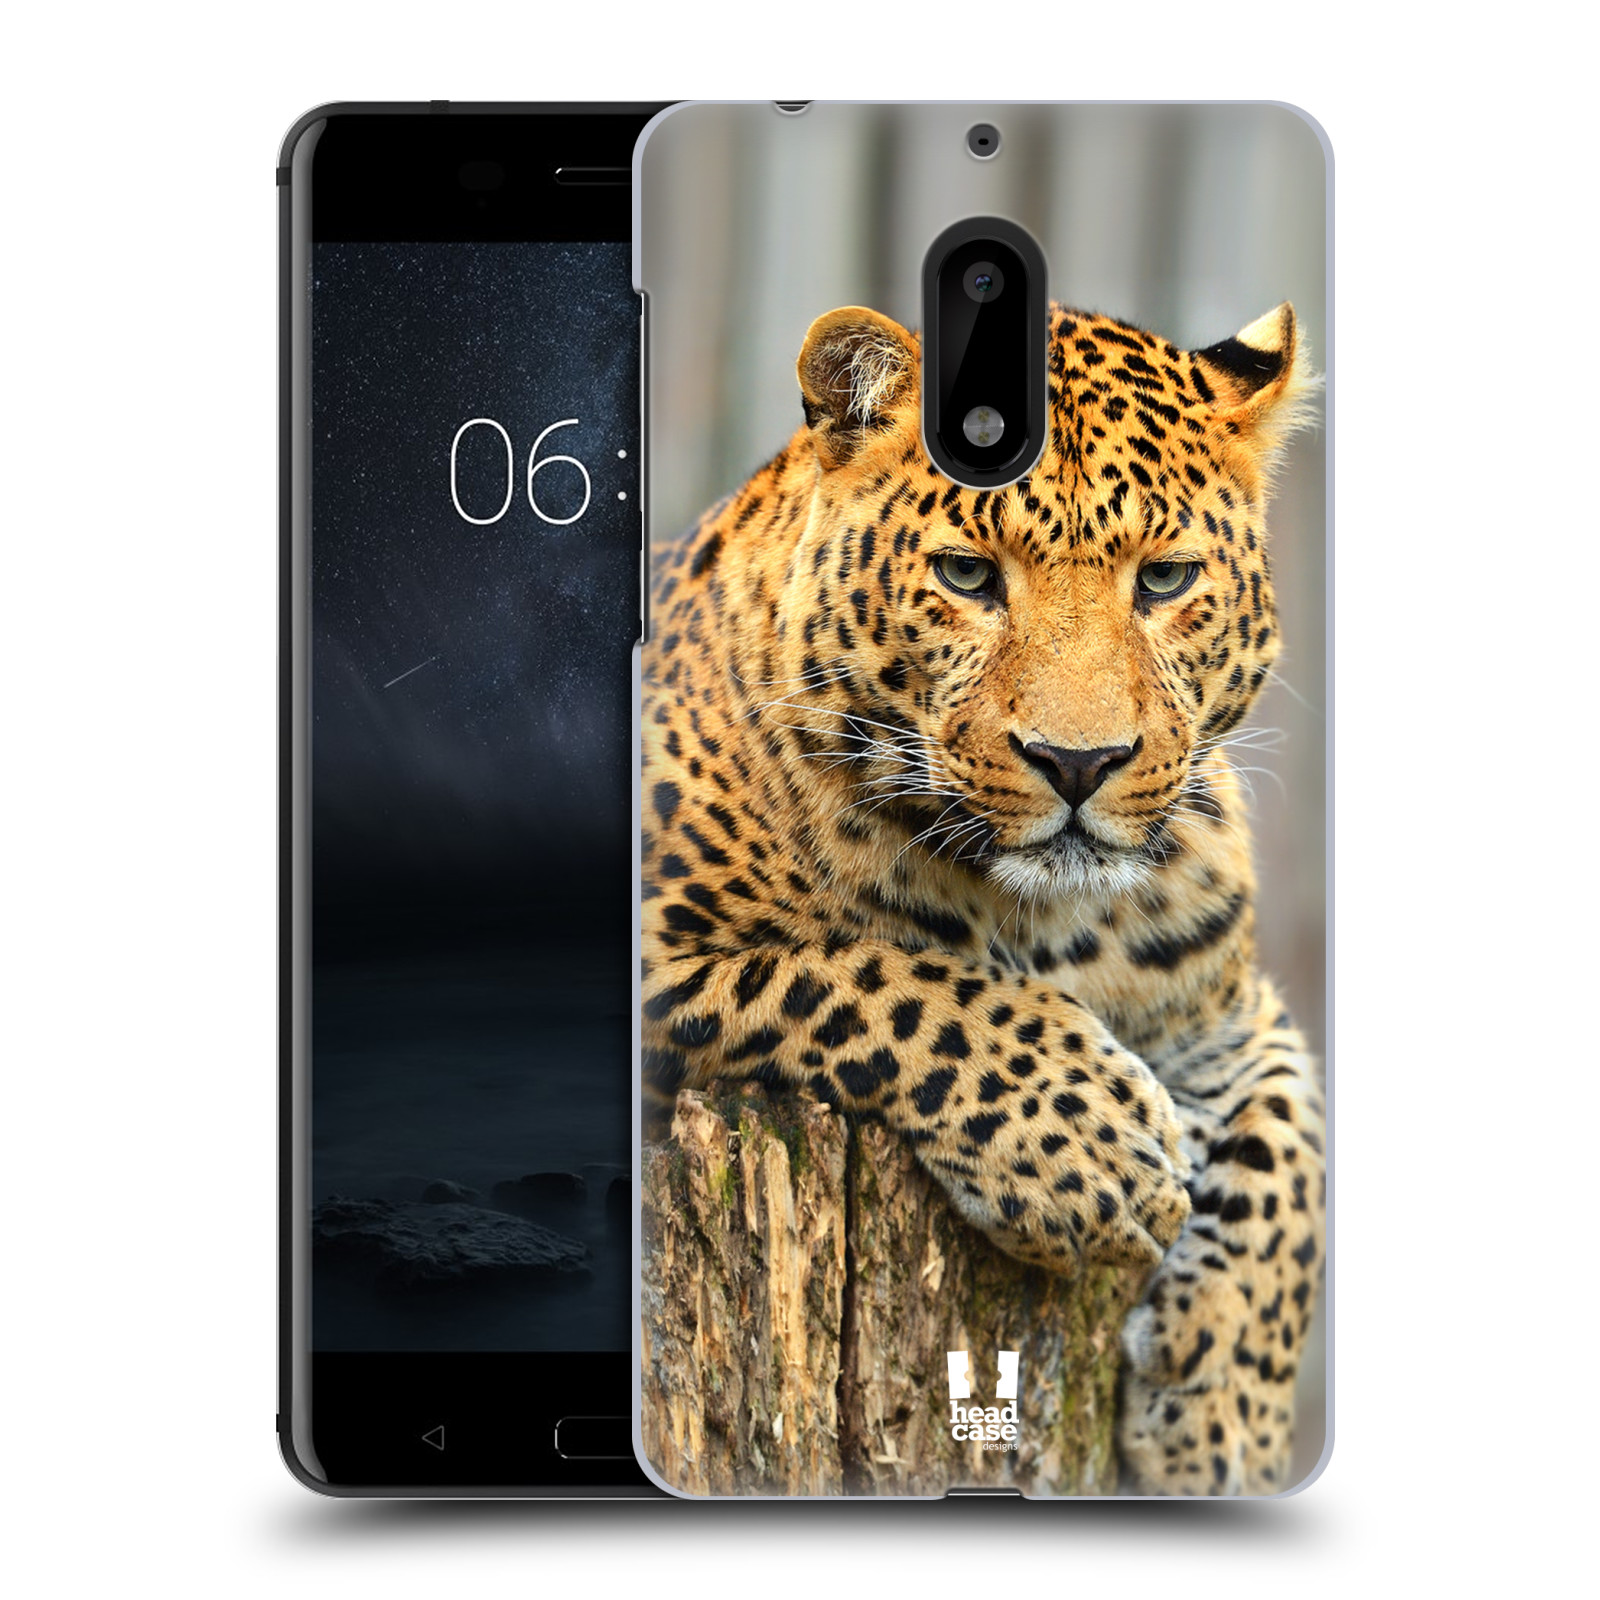 HEAD CASE plastový obal na mobil Nokia 6 vzor Divočina, Divoký život a zvířata foto LEOPARD PORTRÉT